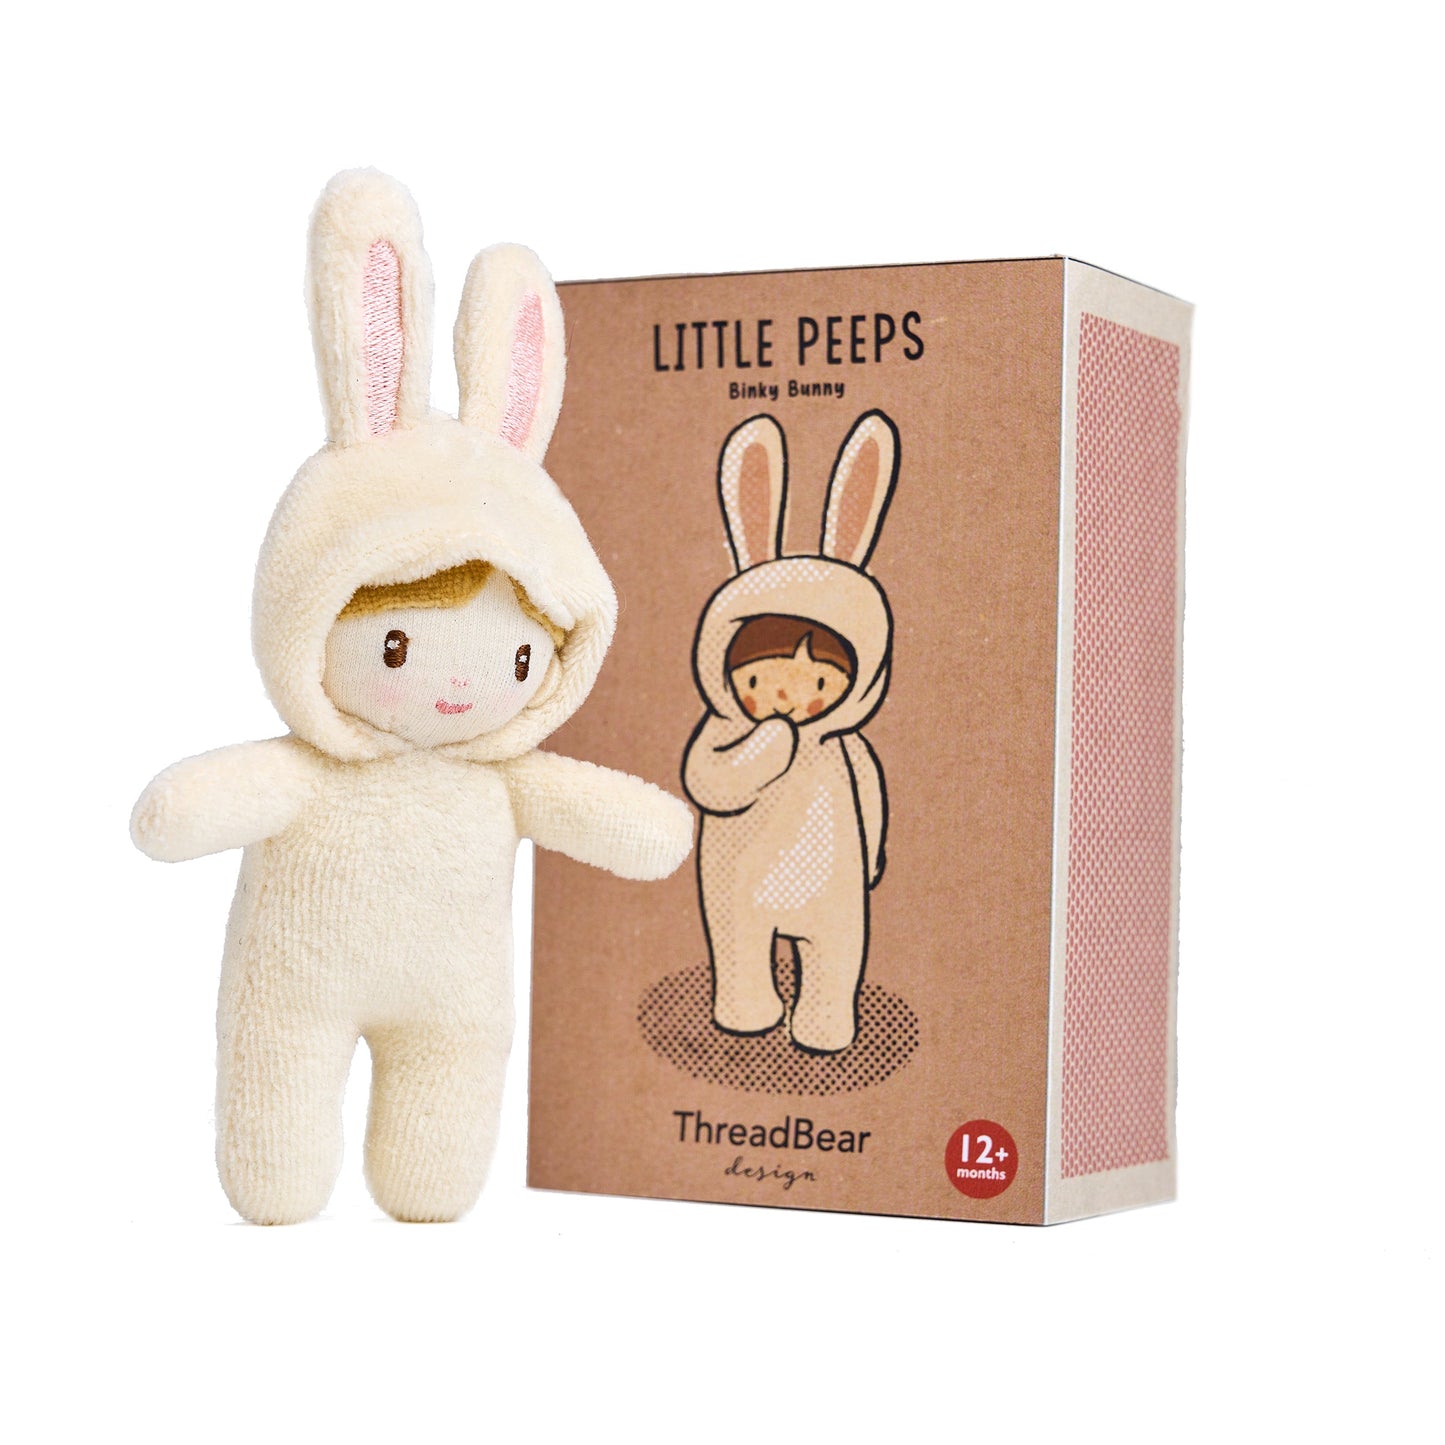 Little Peeps Binky Bunny Soft Toy Doll